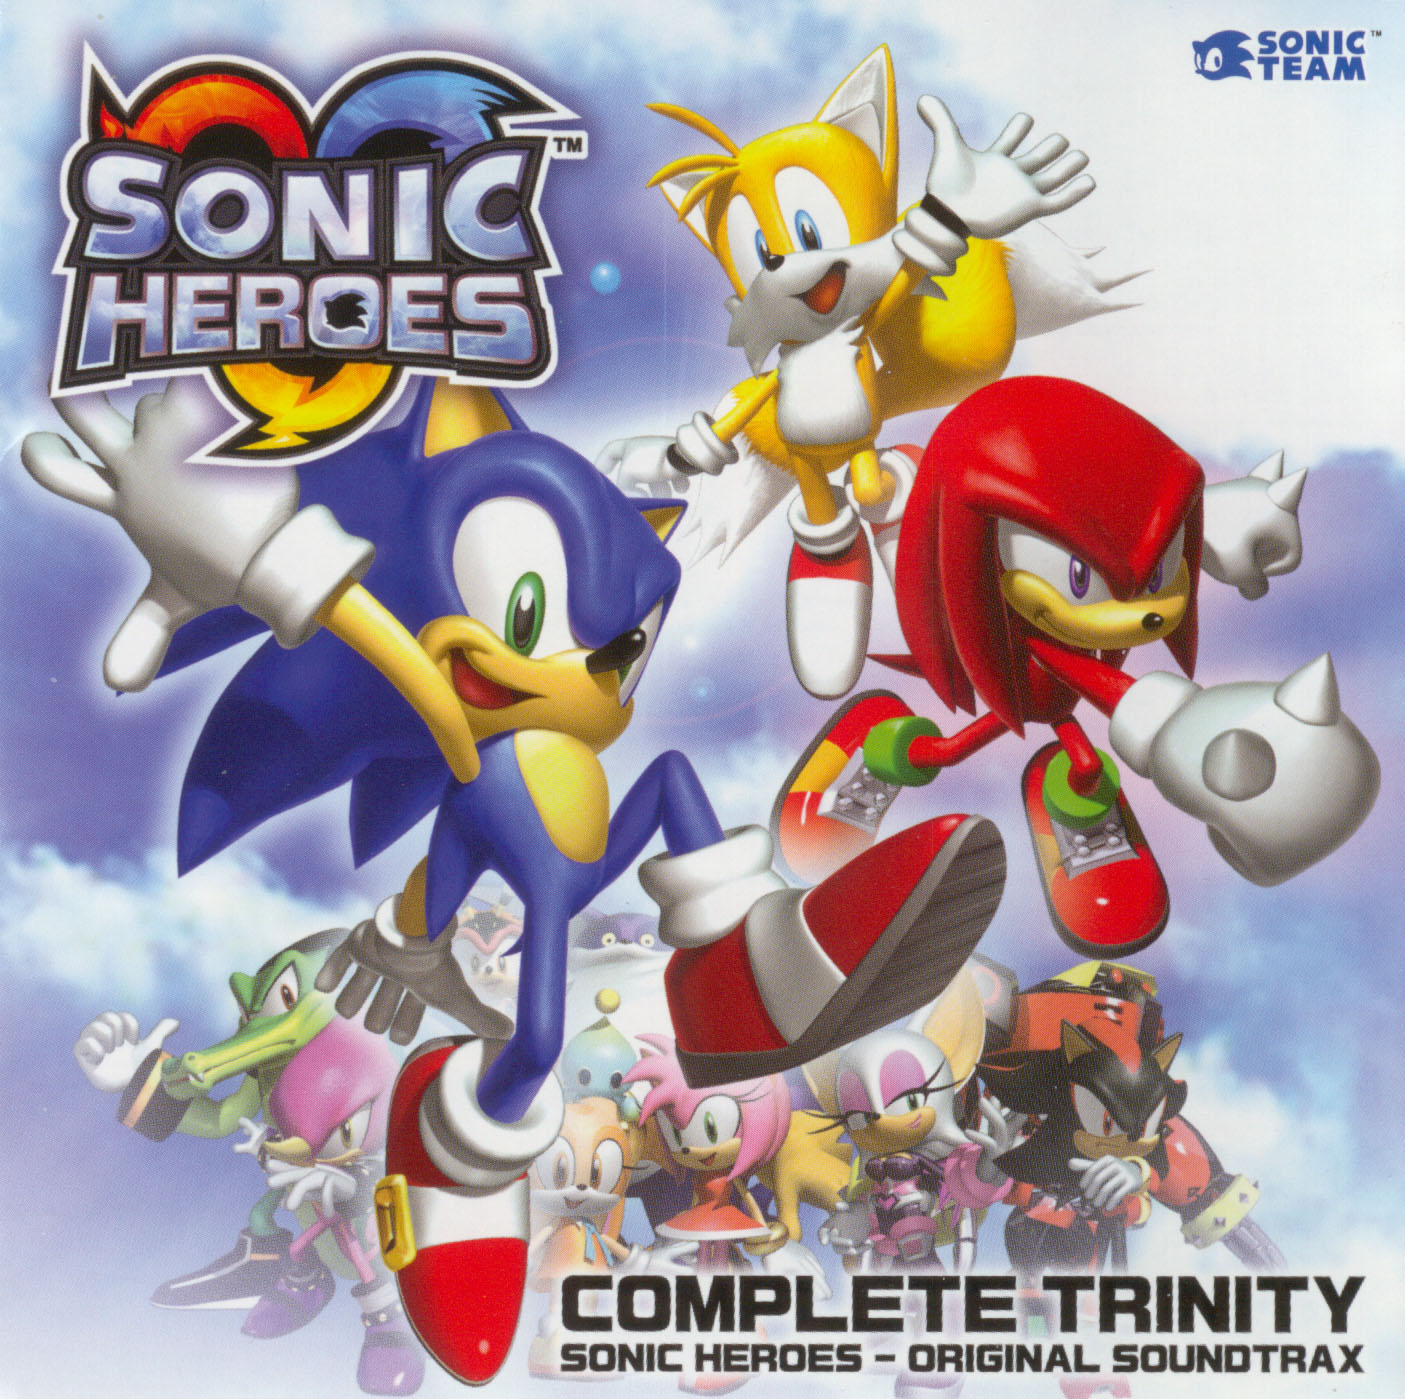 Medisch wangedrag Wees tevreden Implicaties Complete Trinity: Sonic Heroes Original Soundtrax | Sonic News Network |  Fandom